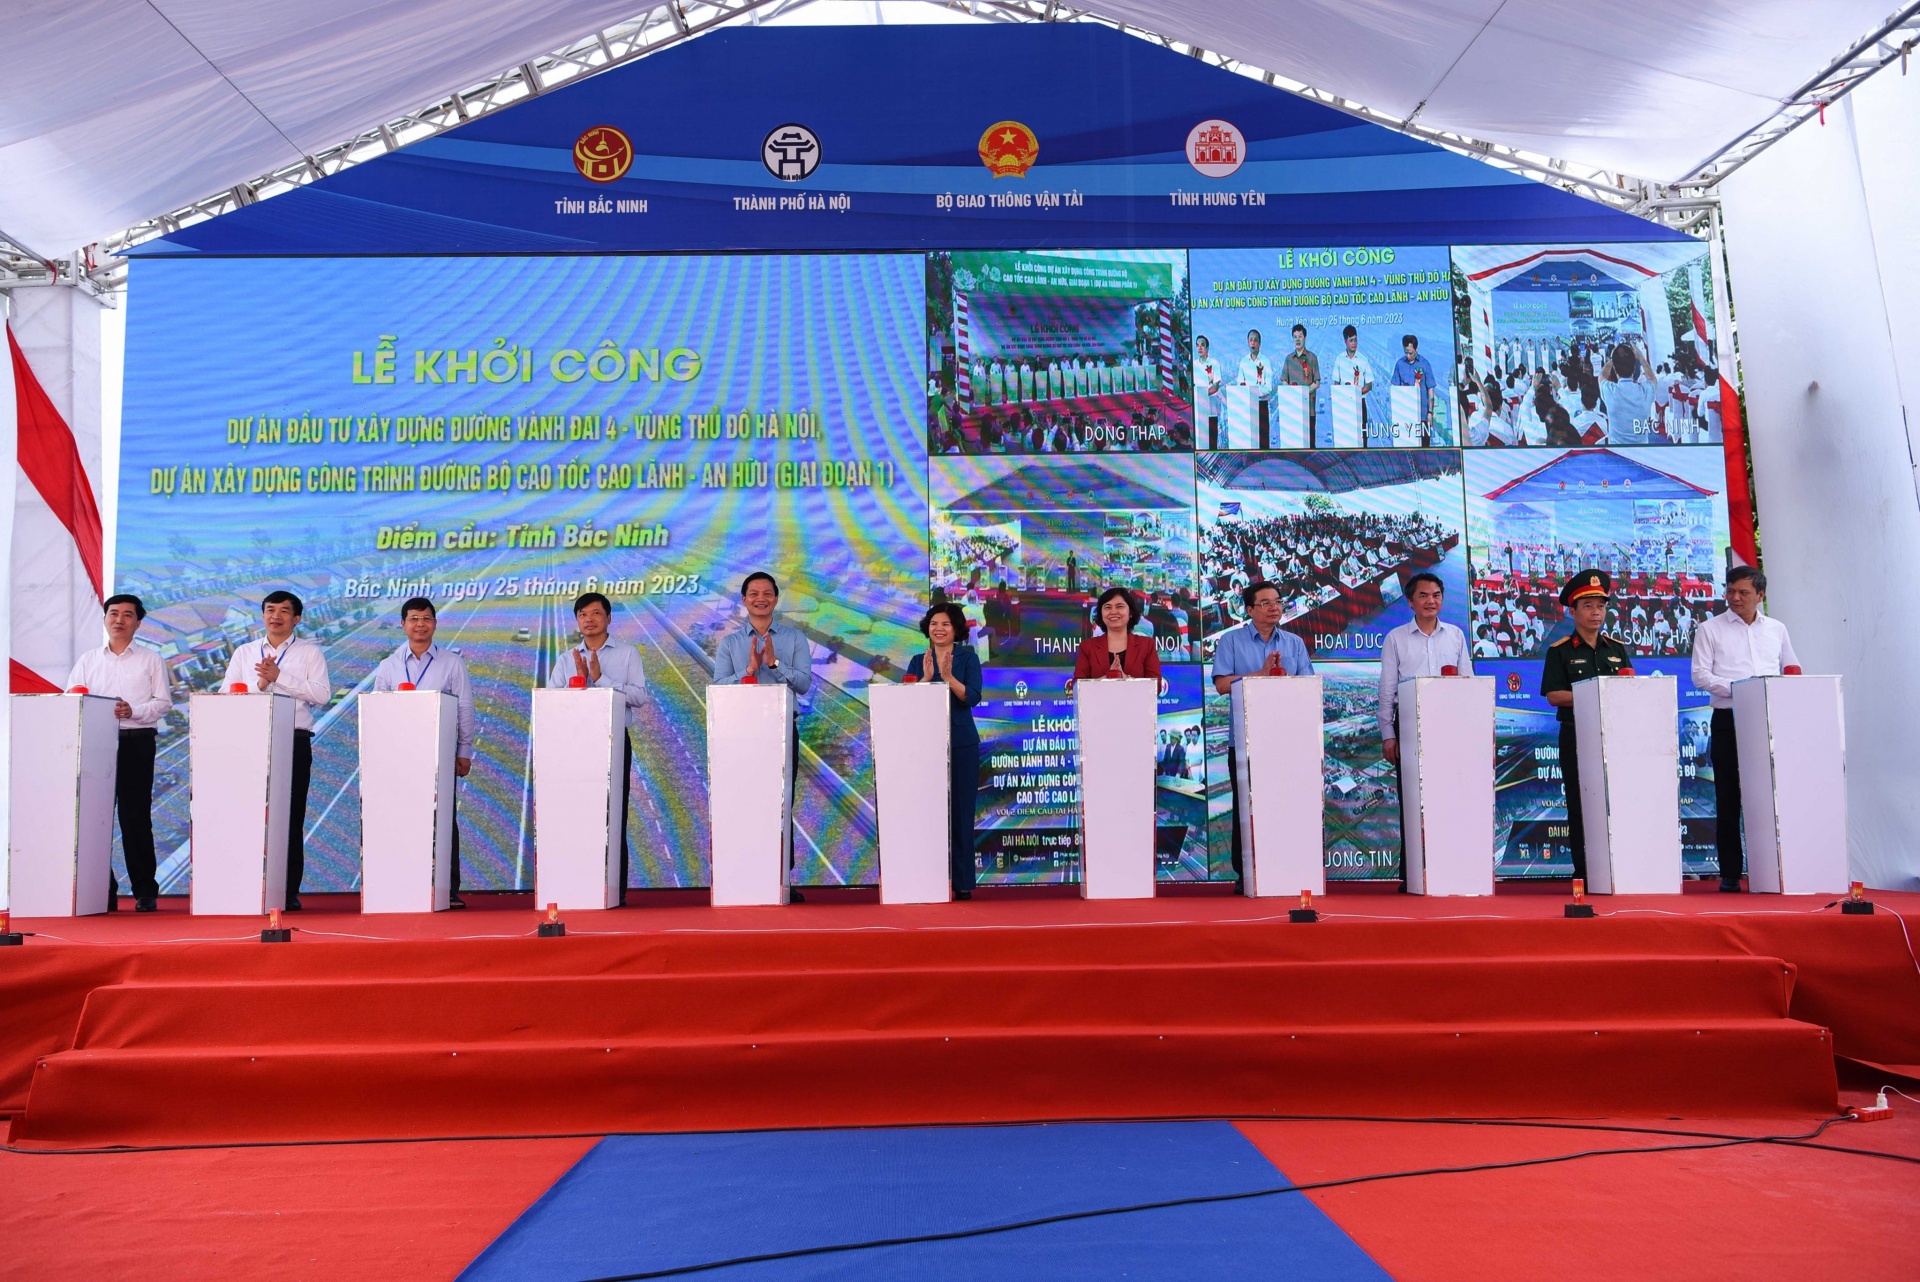 Lãnh đạo tỉnh Bắc Ninh bất nút khởi công Dự án án đầu tư xây dựng đường vành đai 4 - Vùng Thủ đô.